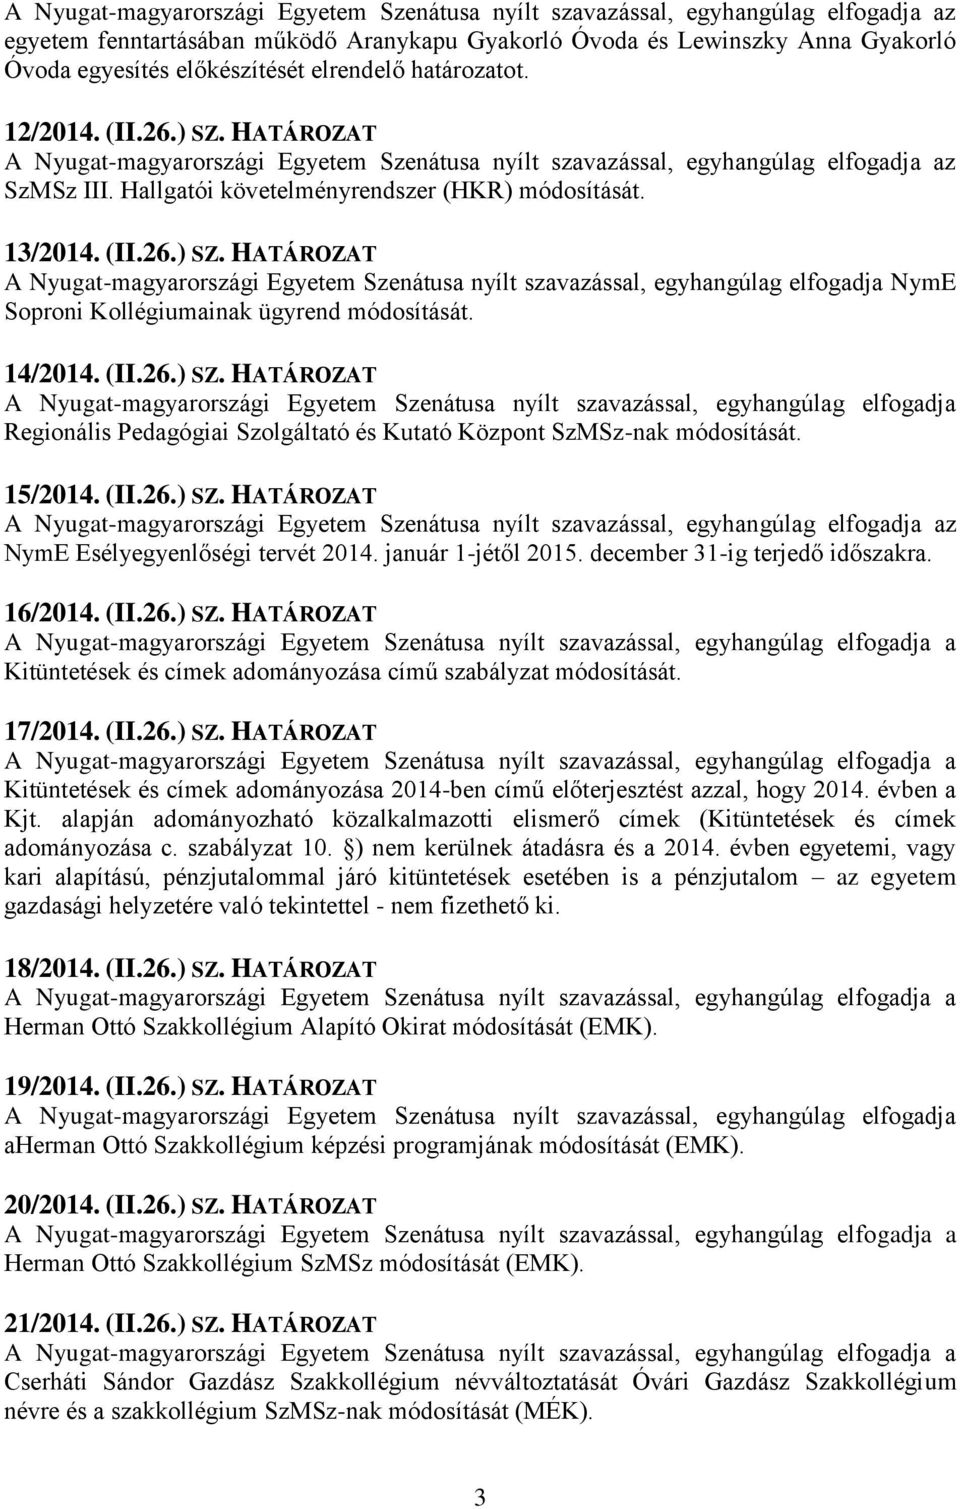 HATÁROZAT A Nyugat-magyarországi Egyetem Szenátusa nyílt szavazással, egyhangúlag elfogadja NymE Soproni Kollégiumainak ügyrend módosítását. 14/2014. (II.26.) SZ.